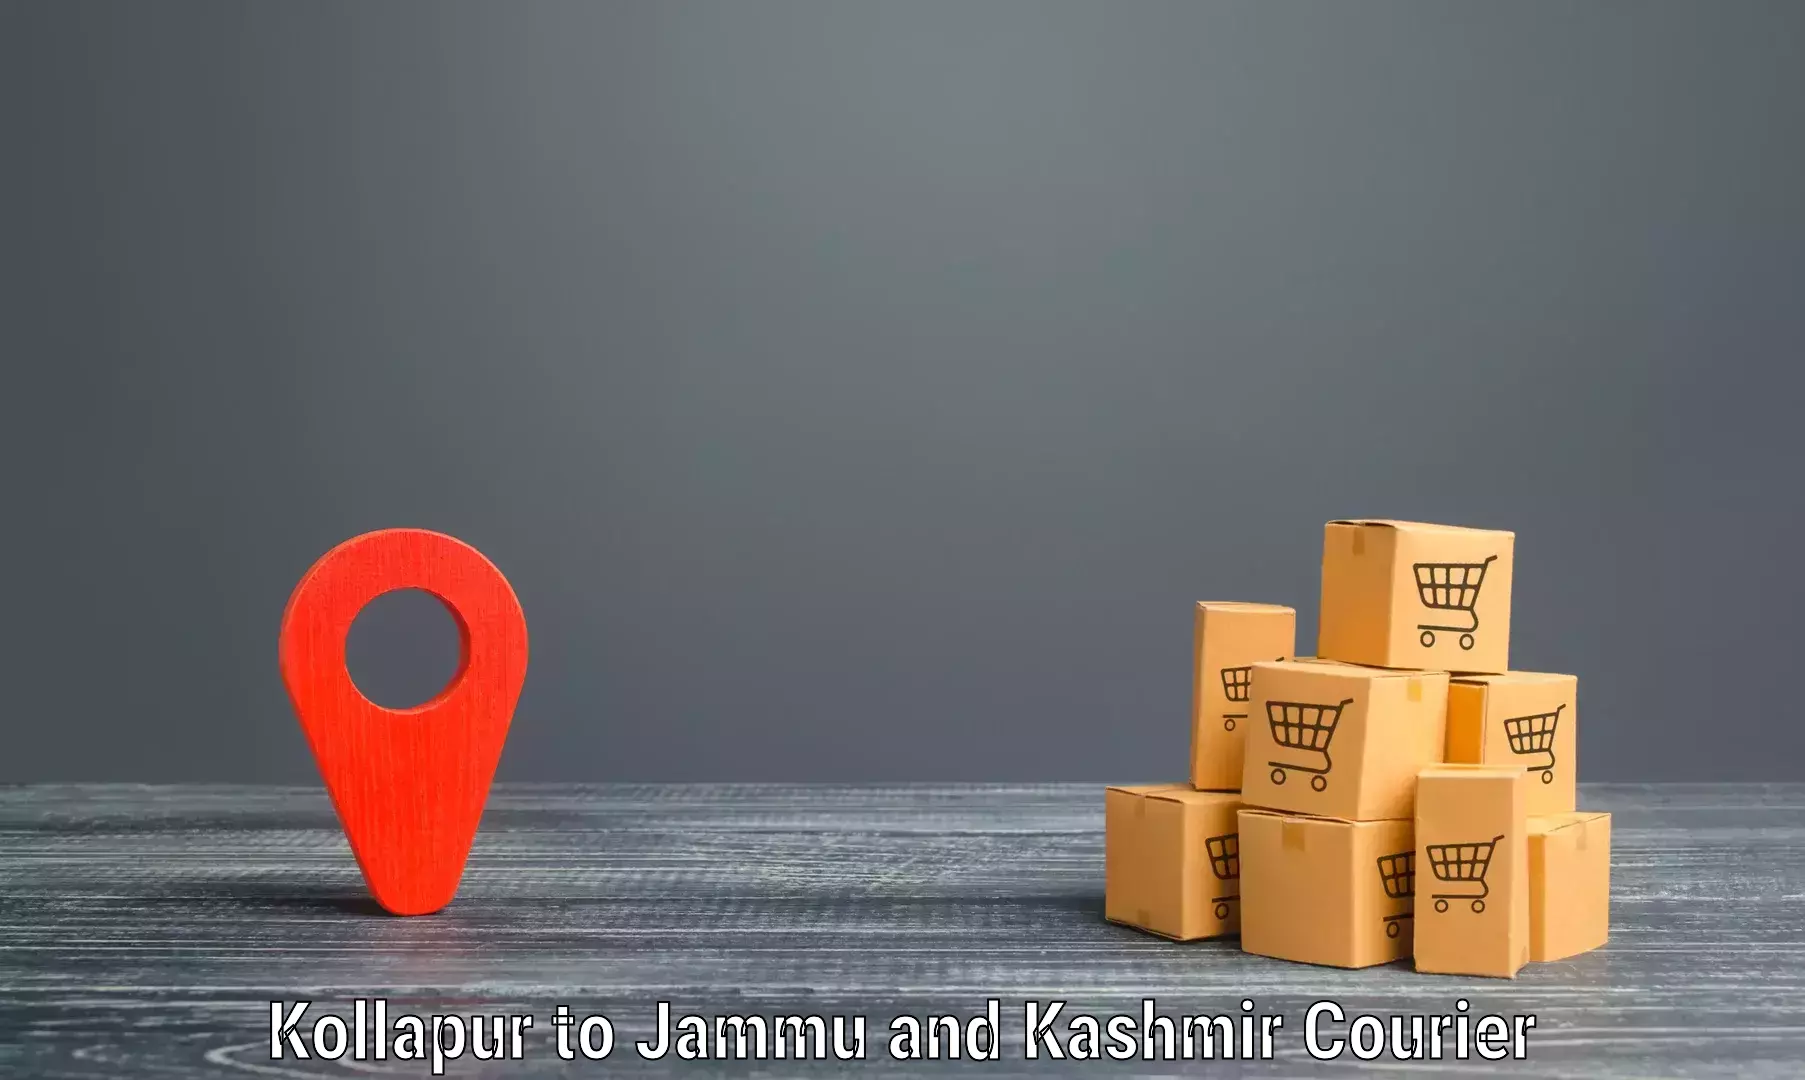 Express logistics providers in Kollapur to Srinagar Kashmir